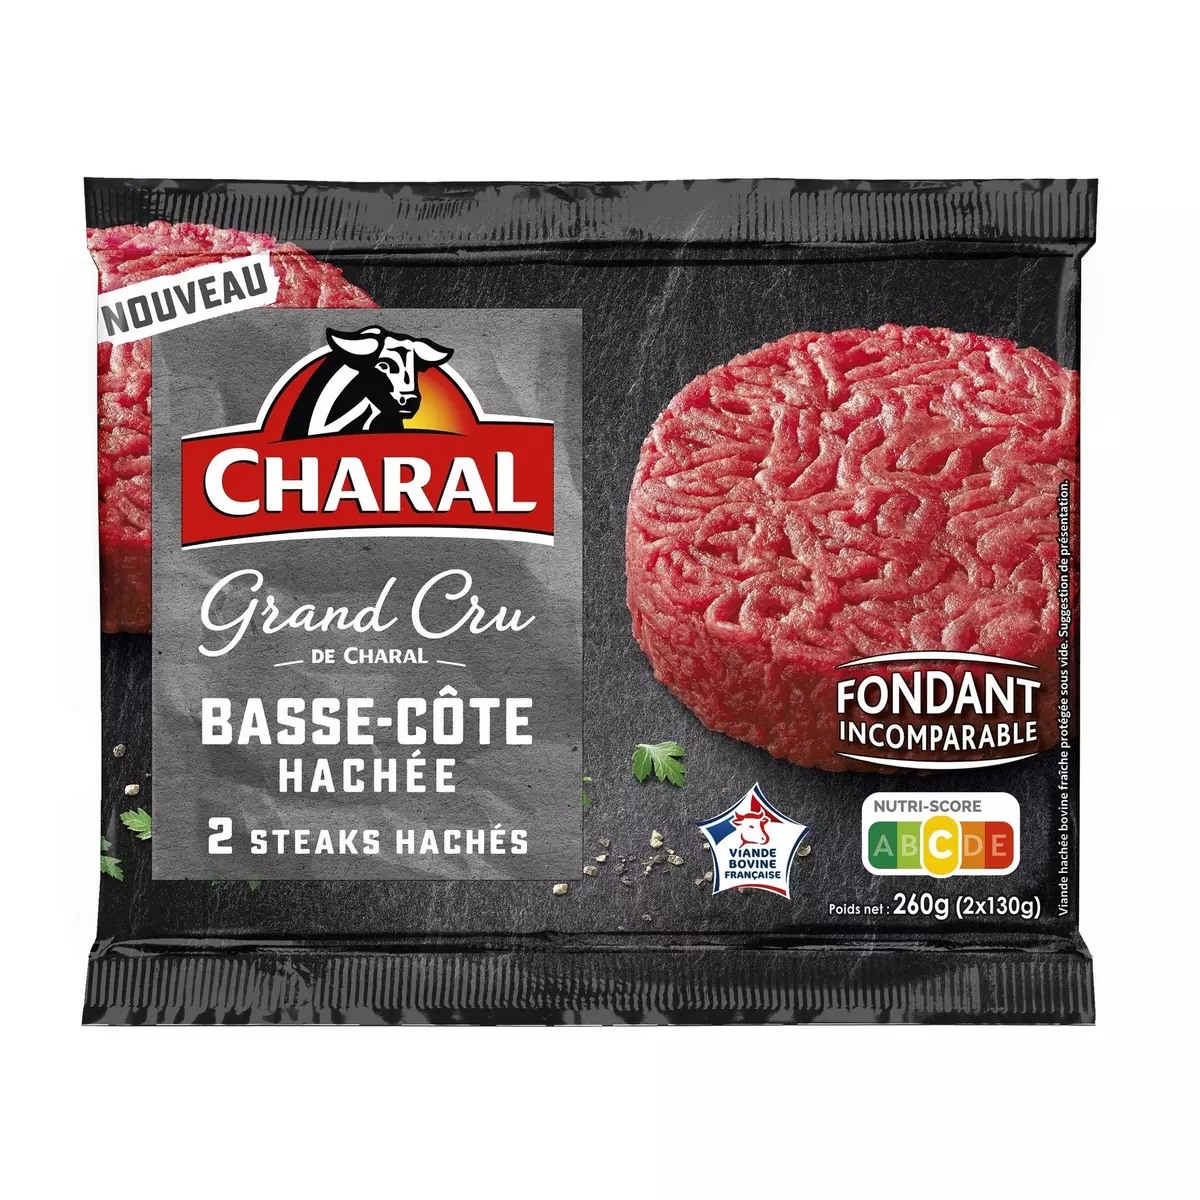 CHARAL Basse-côte Steaks hachés 2 pièces 2x130g